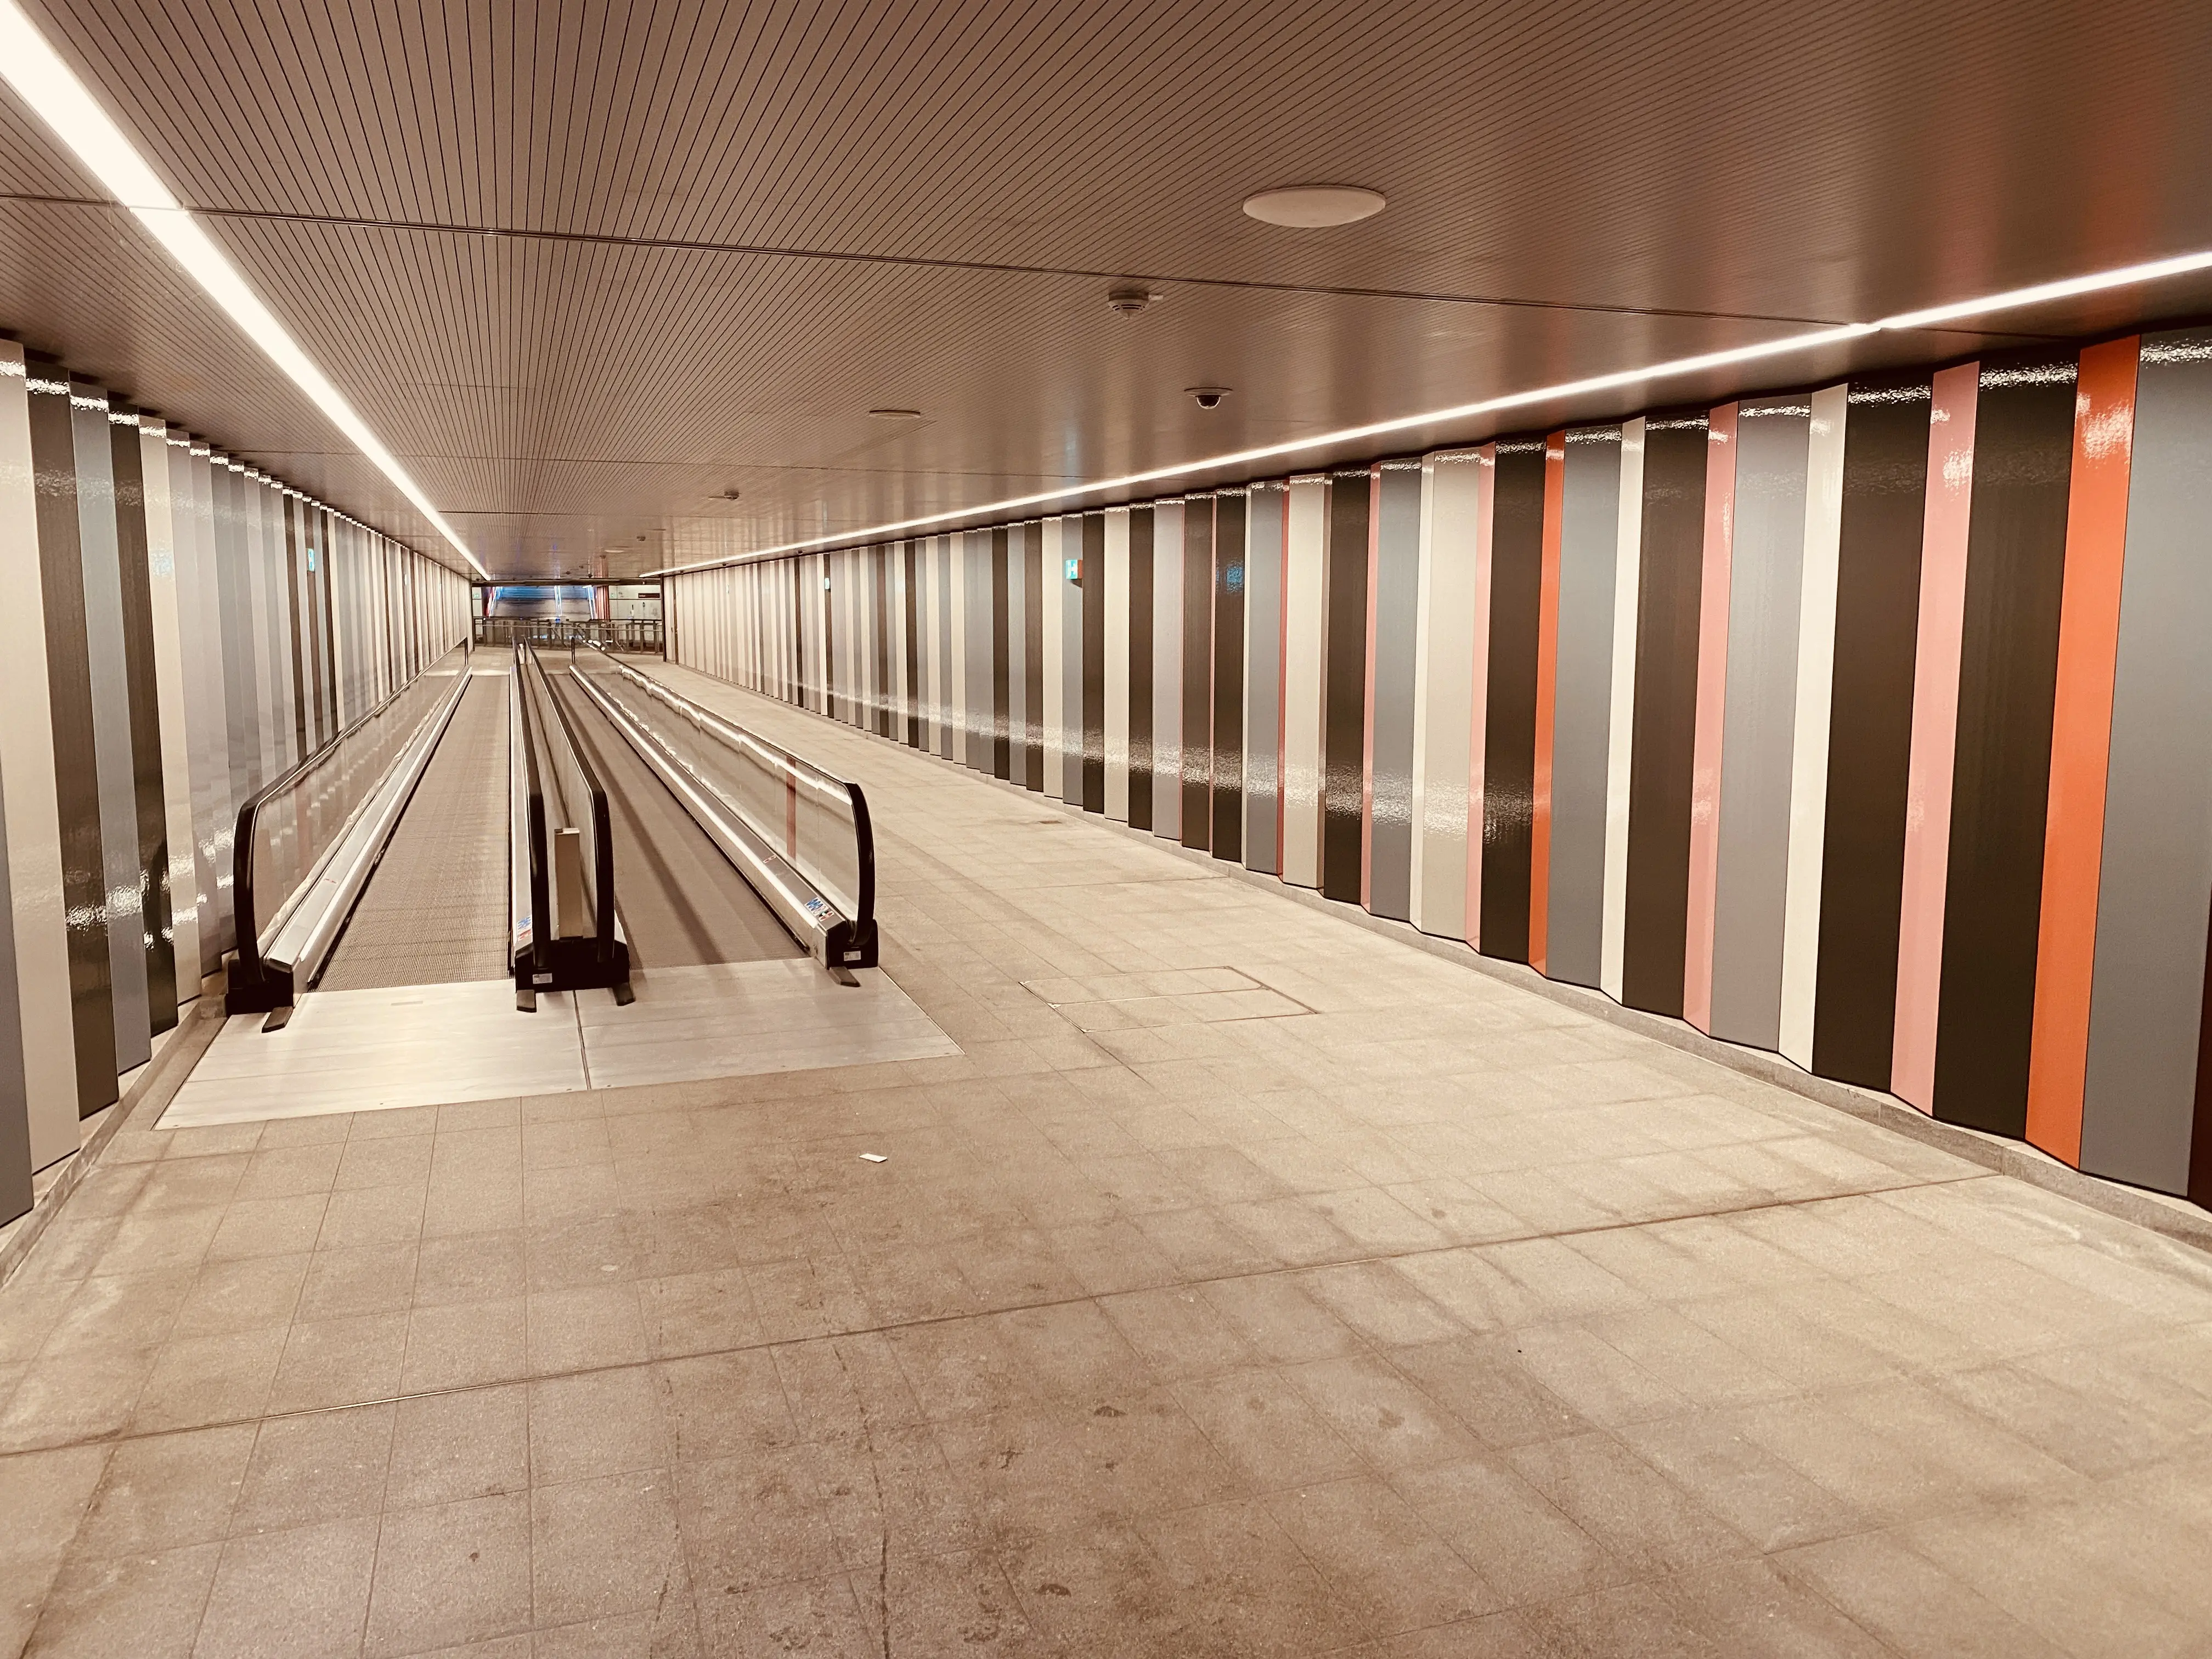 Billede af Nordhavn Metrostation.